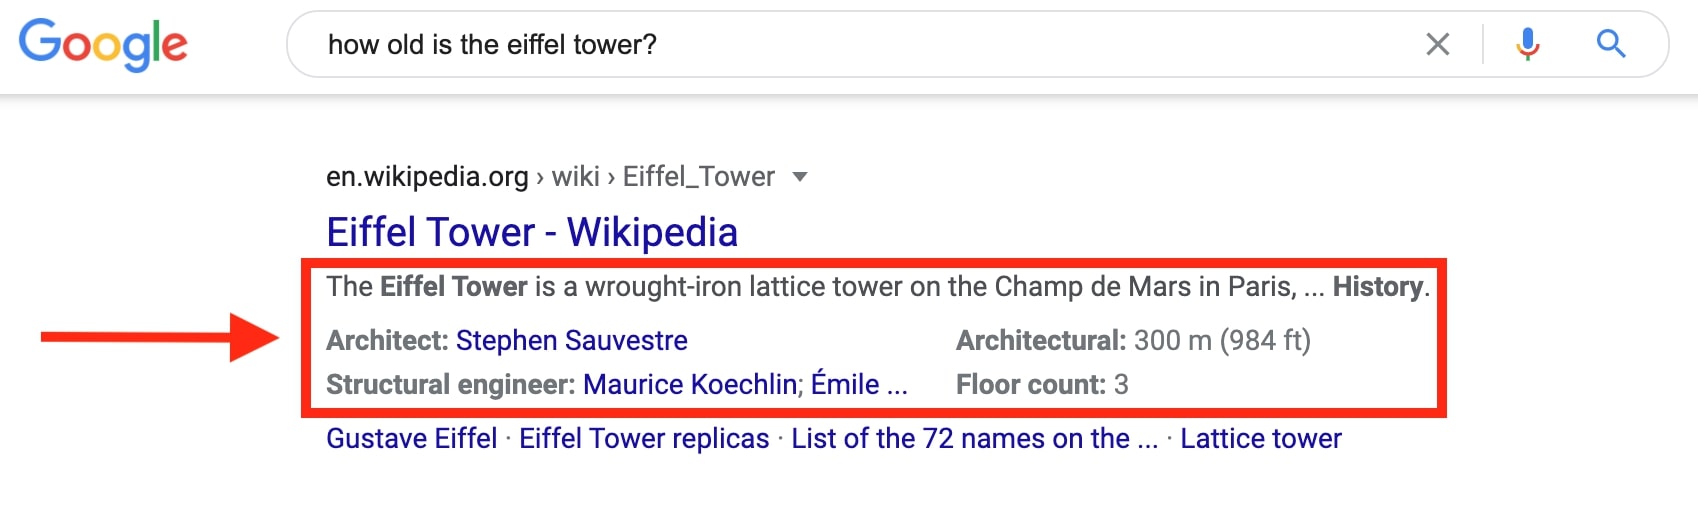  Extrait Google pour la Tour Eiffel 